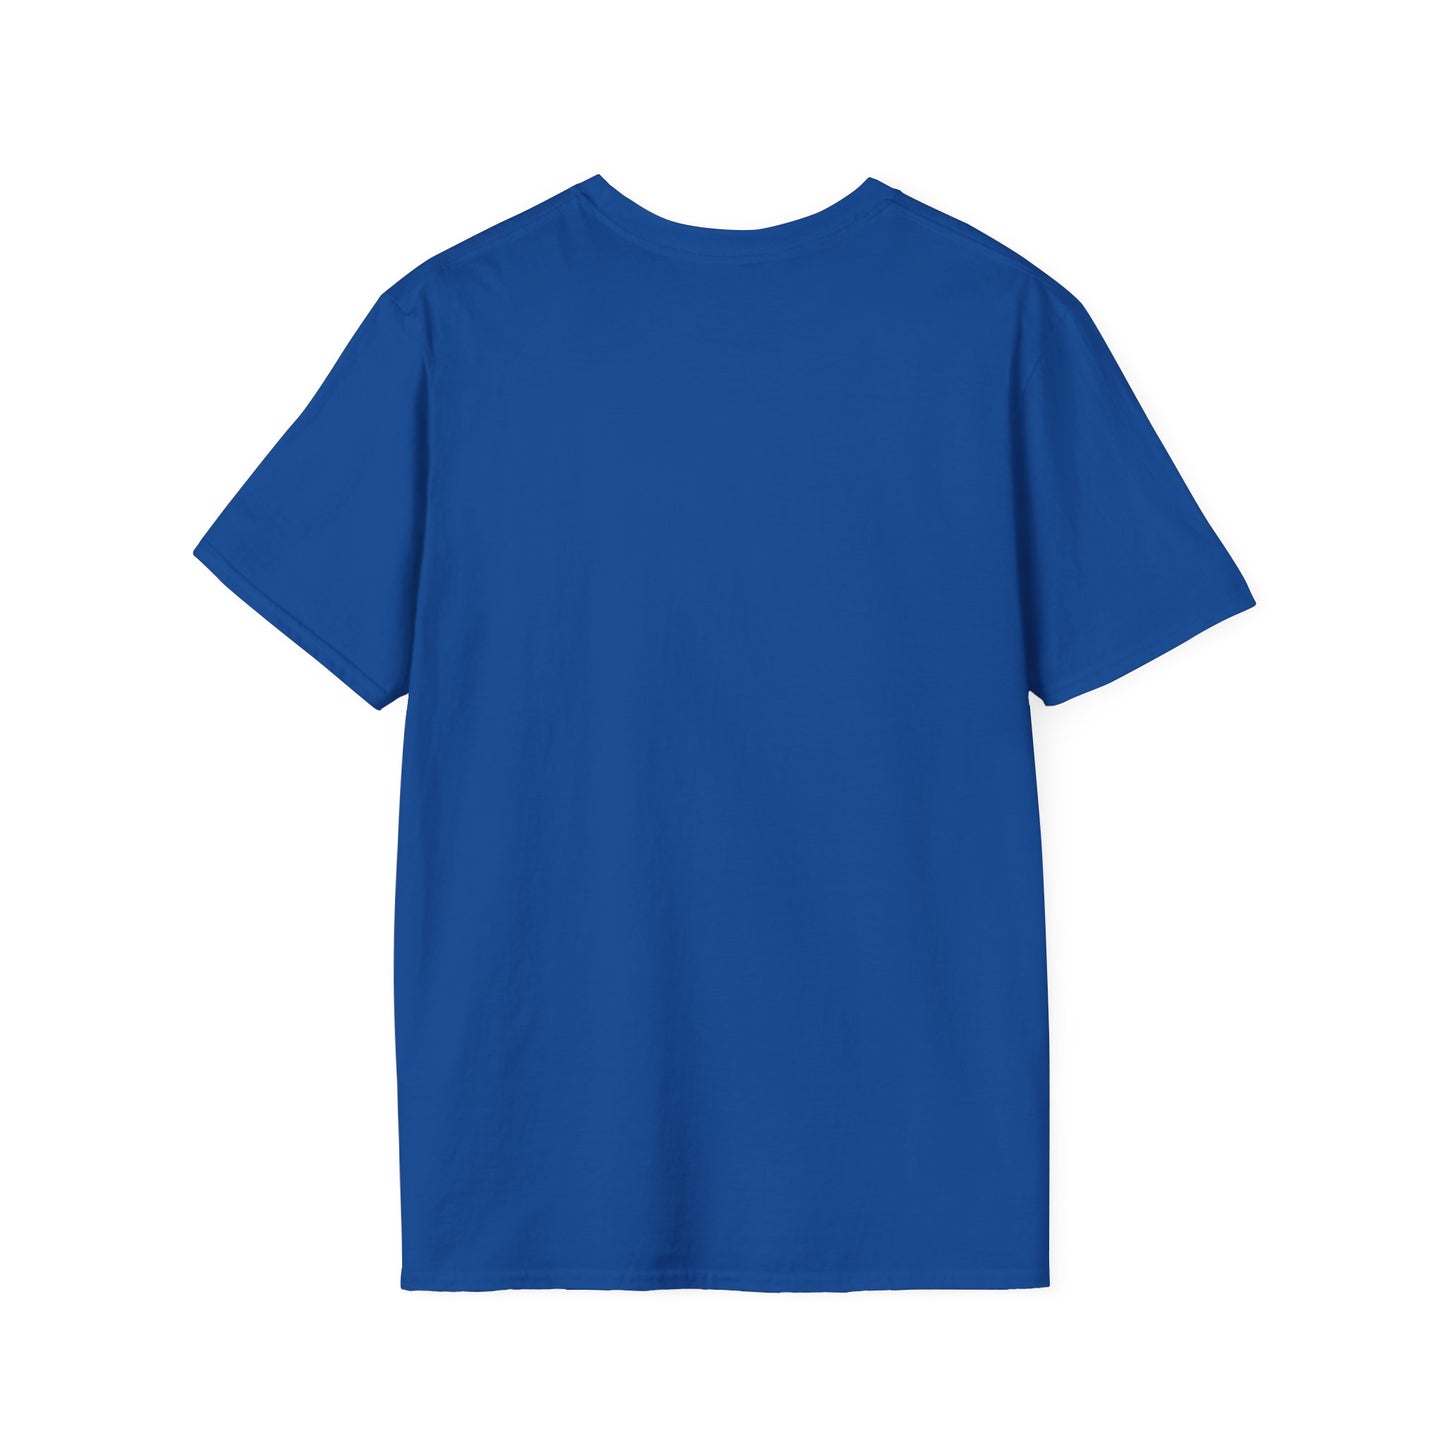 Equipo Ragdol - mundo mejor: camiseta unisex